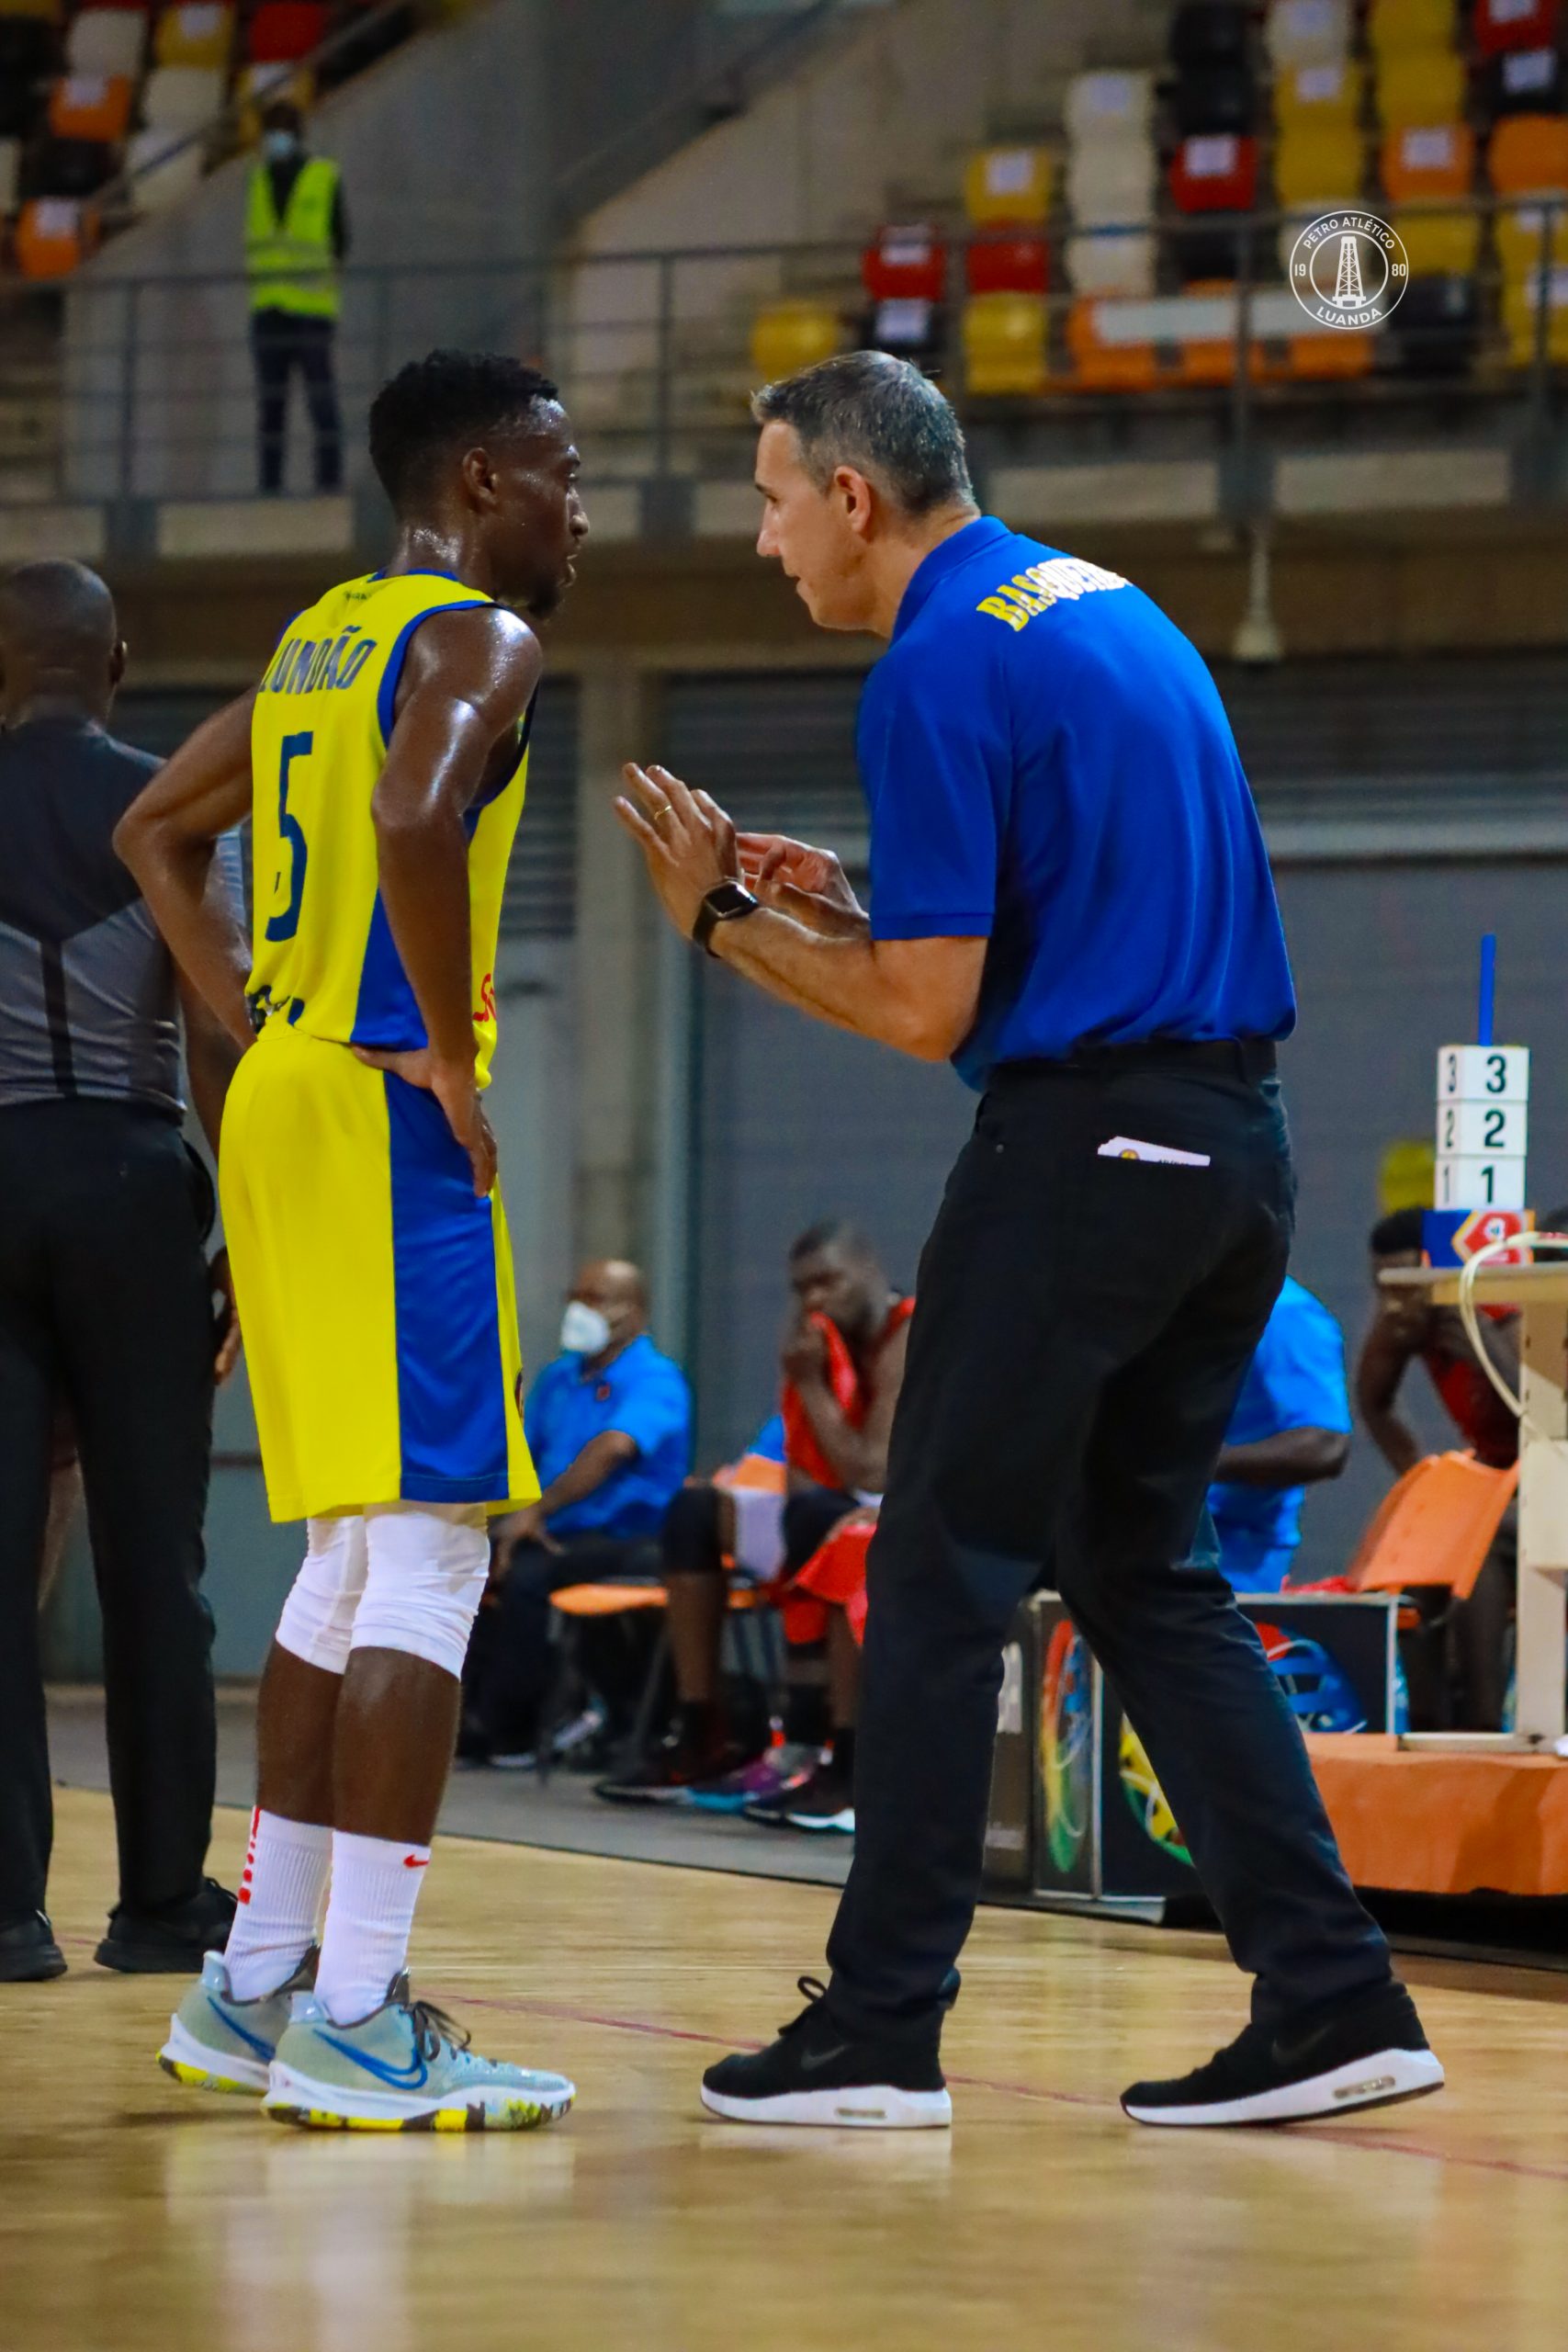 1ºD` Agosto vs Petro de Luanda - 05-06-2018 Unitel Basket [JOGO